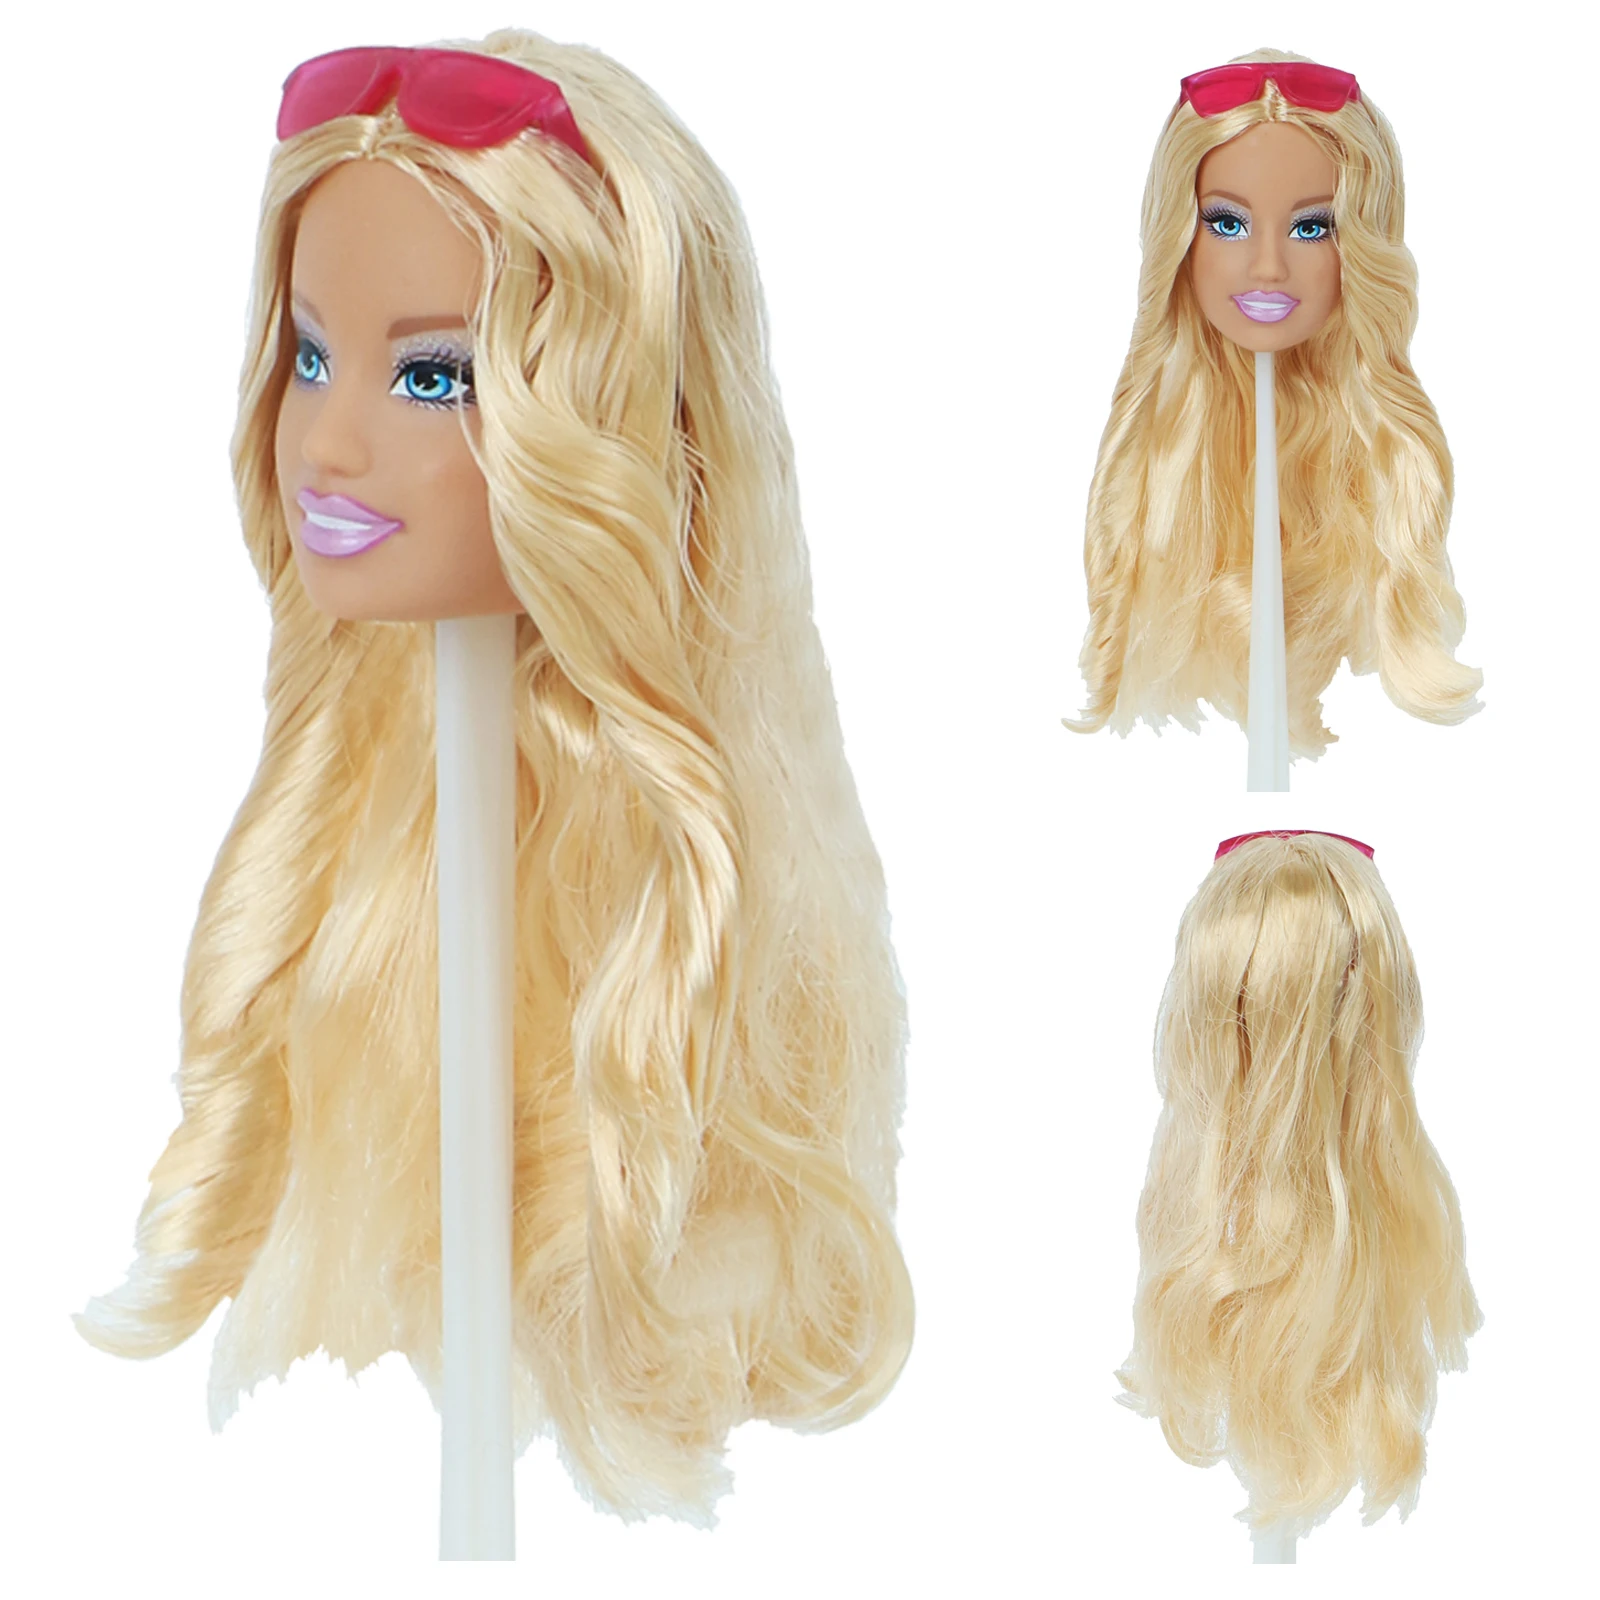 1x Модная Кукла леди голова короткие волосы длинные волосы прямые вьющиеся волосы DIY аксессуары для 1" Кукла тело игрушка девушка